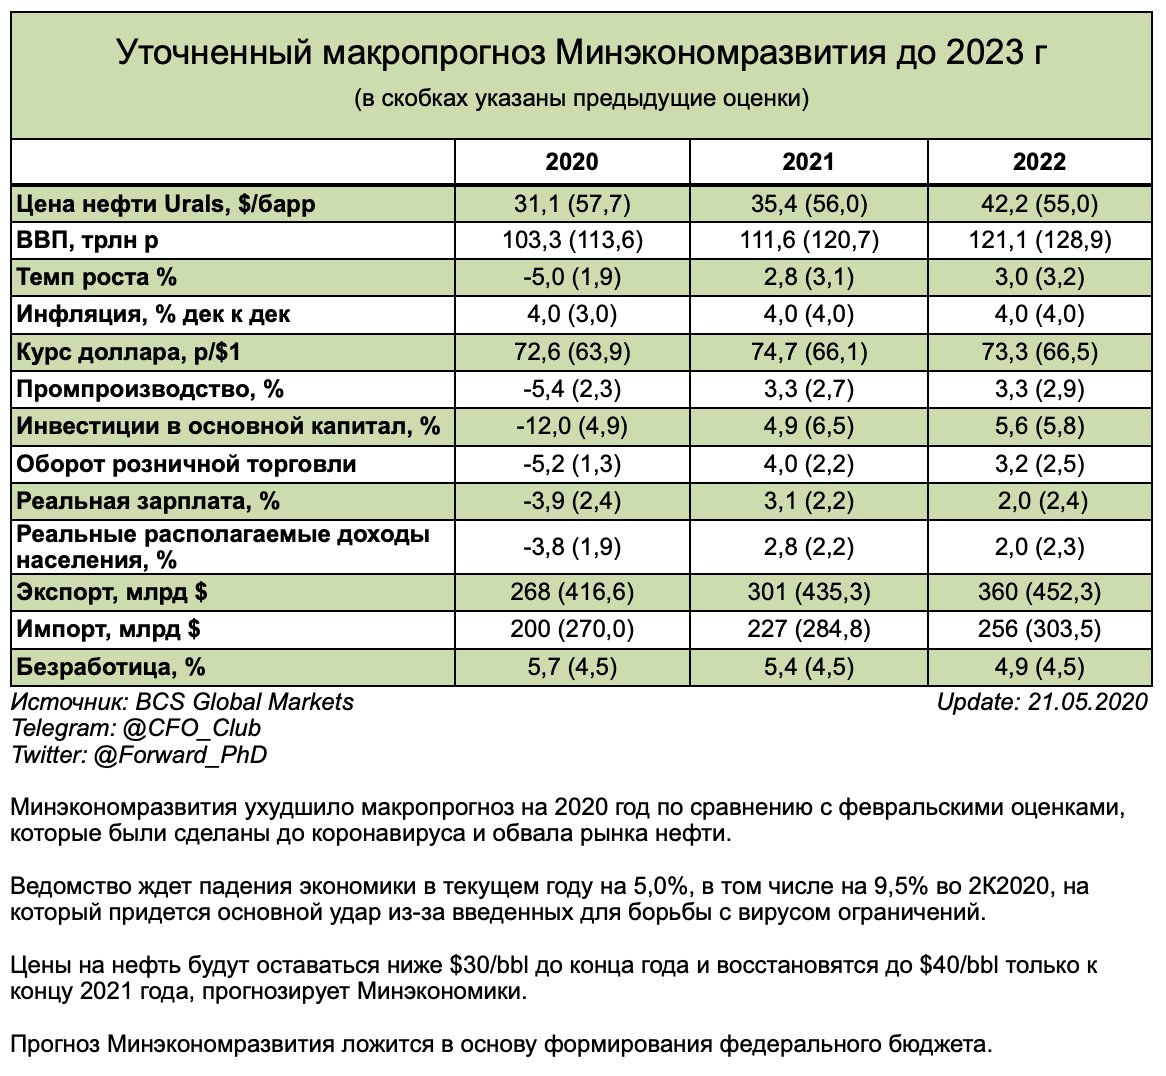 Внешняя торговля россии с чехией в 1 полугодии 2021 г.